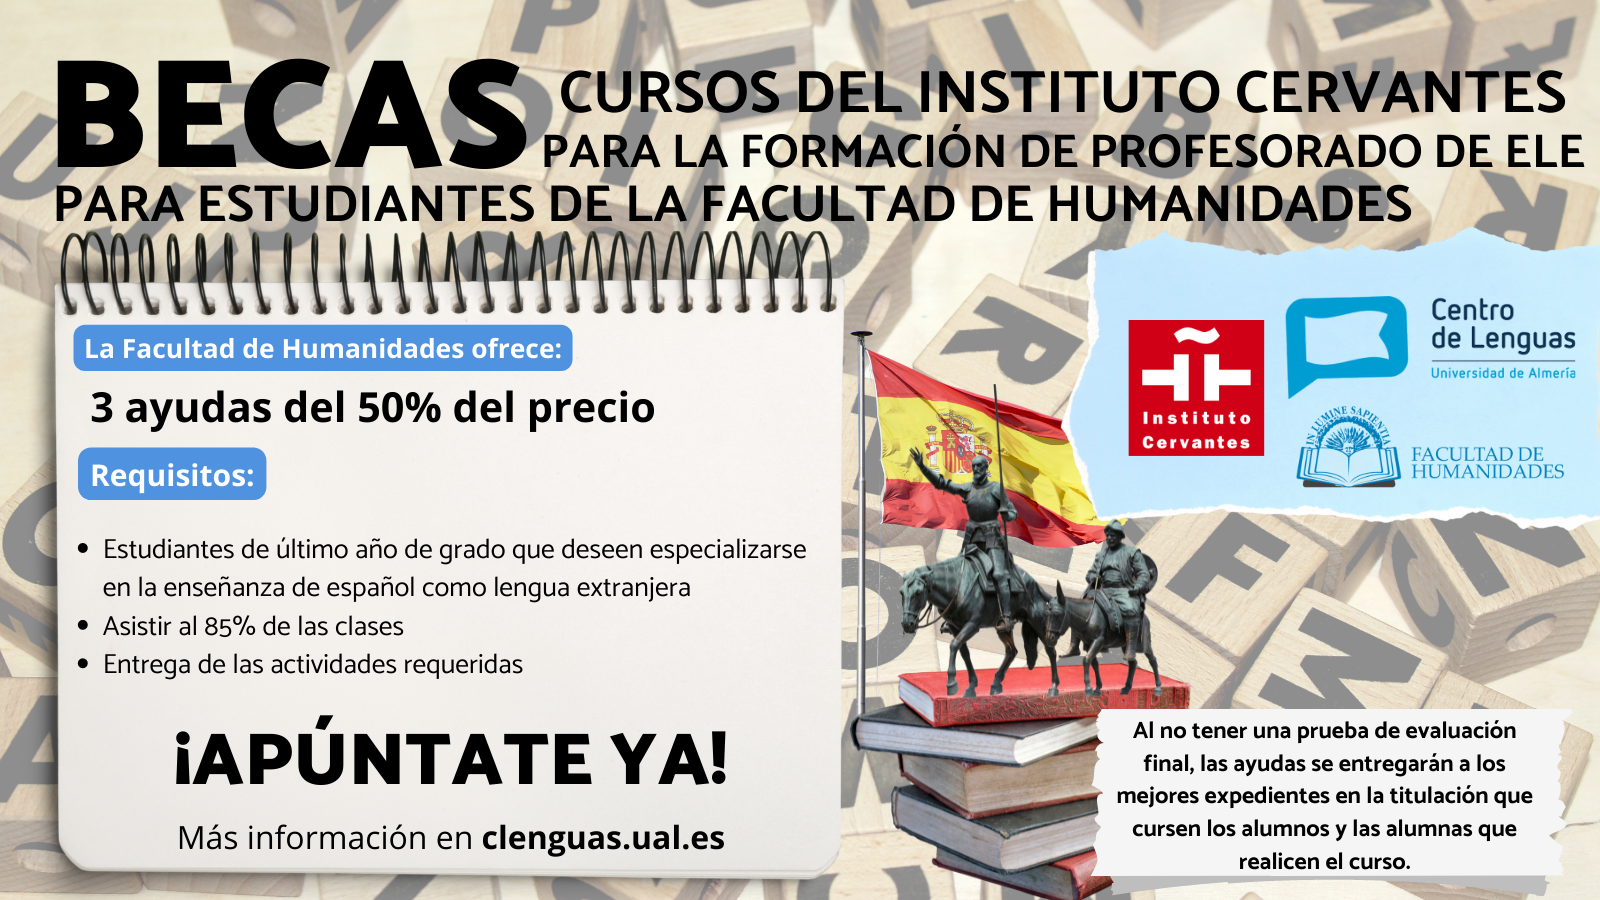 Becas de cursos del instituto cervantes para la formación del profesorado de ELE (español como lengua extranjera)